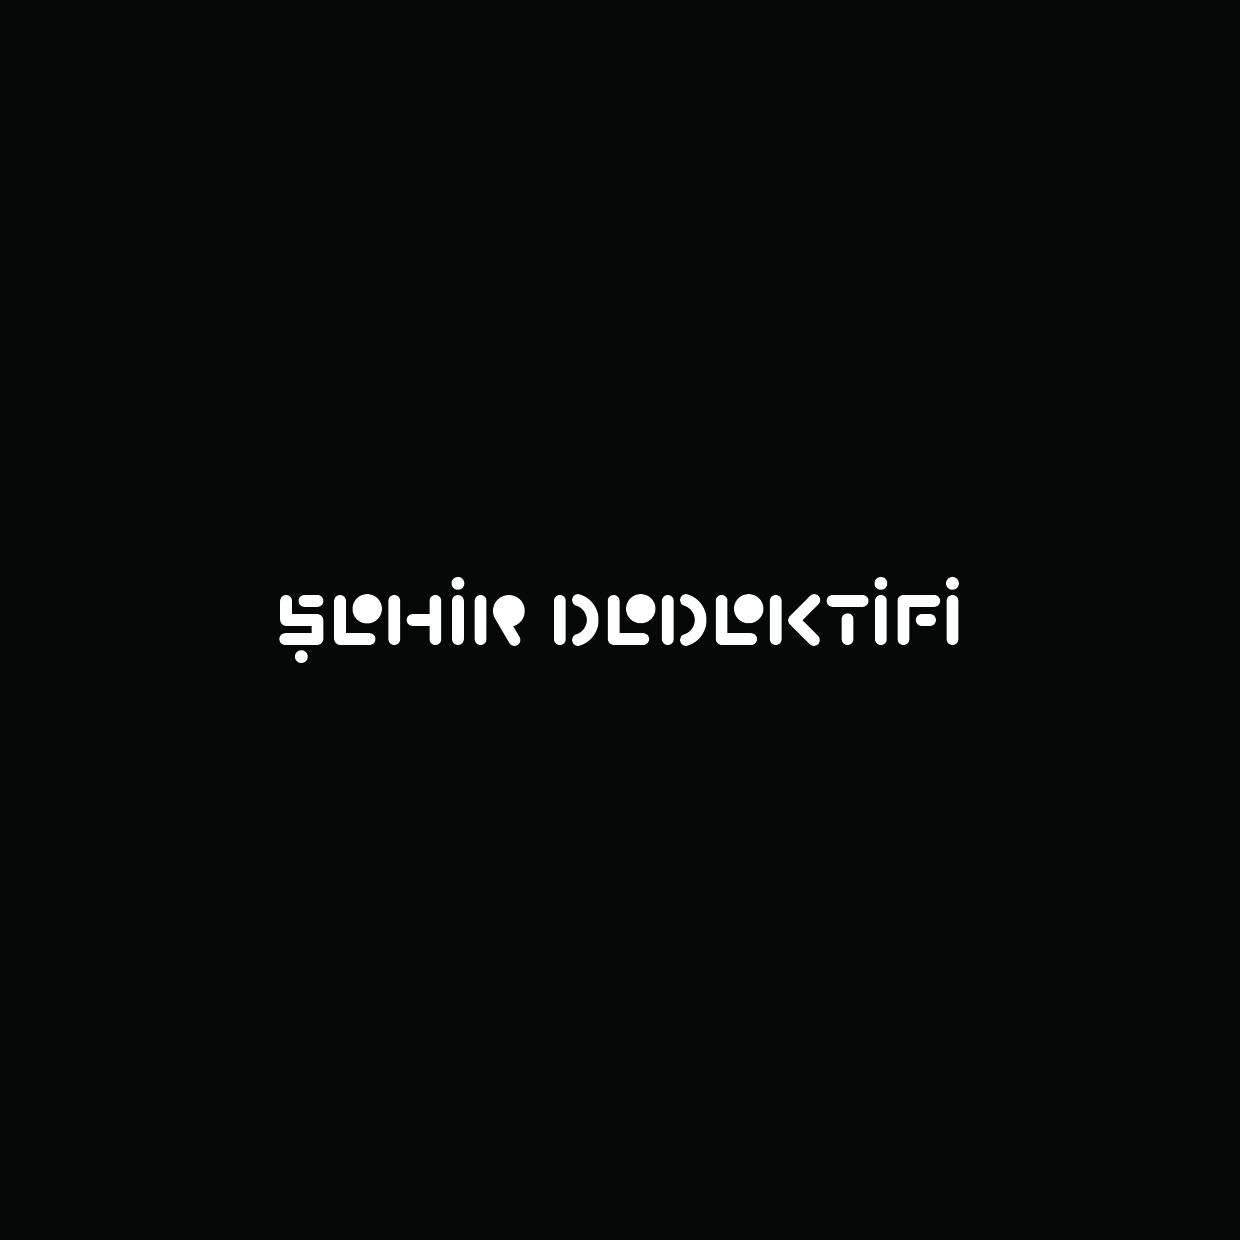 Sehir-Dedektifi-Logo2-forGMK